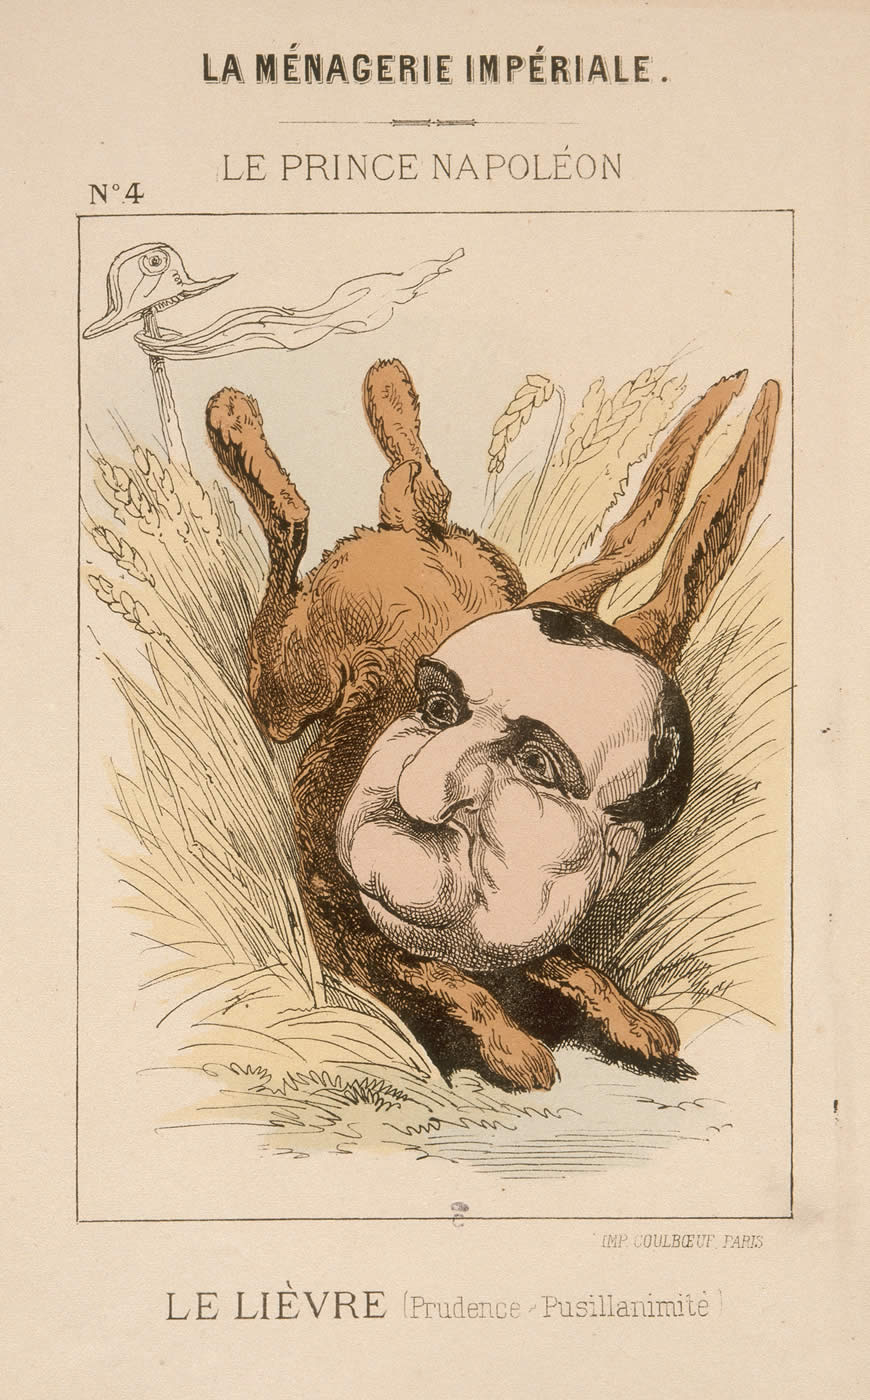 La ménagerie impériale, portrait-charge n°4 du Prince Napoléon, "le lièvre".